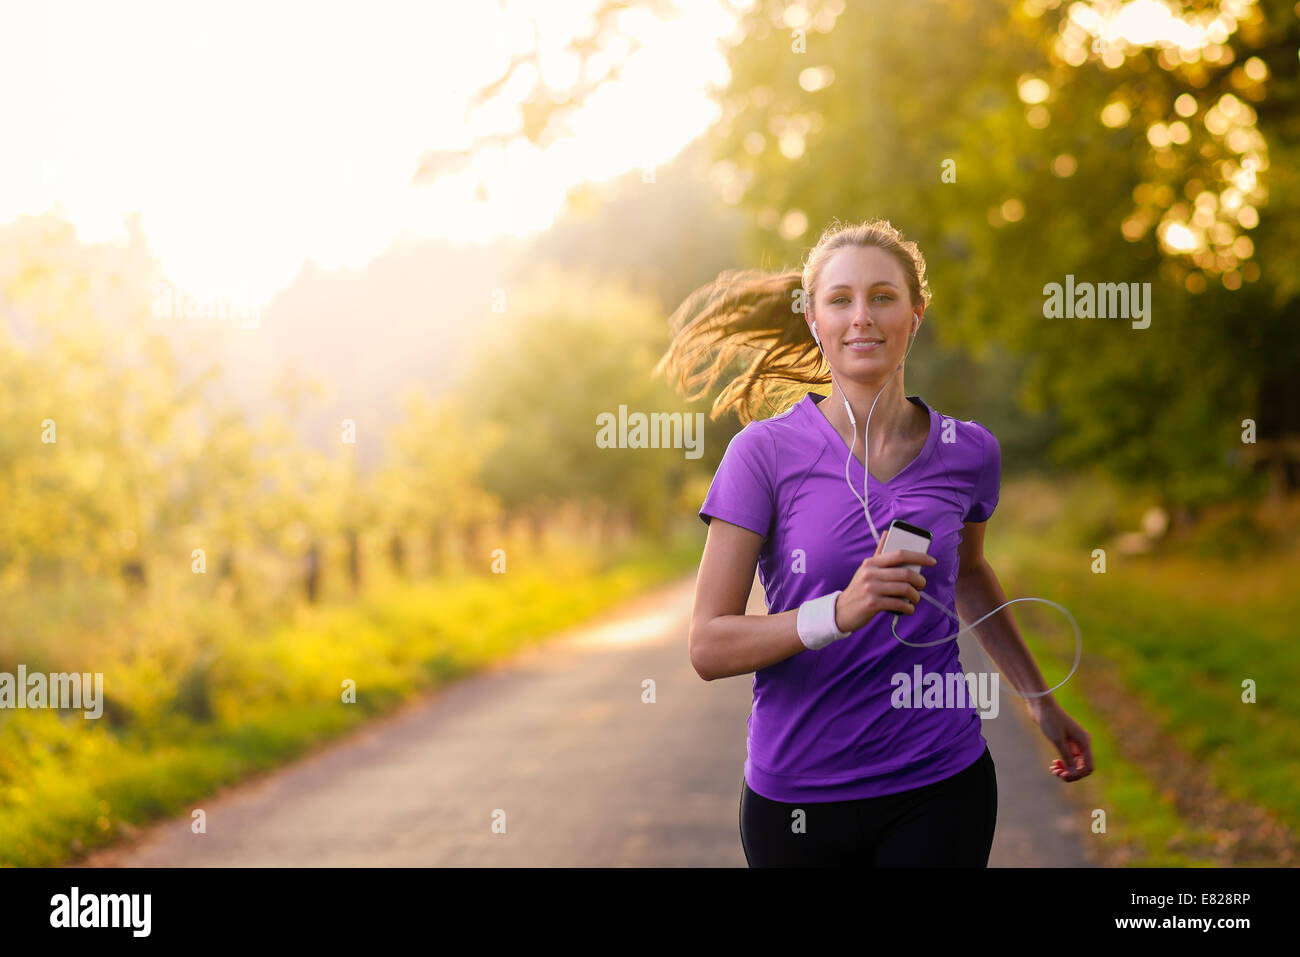 Donna che fa jogging immagini e fotografie stock ad alta risoluzione - Alamy